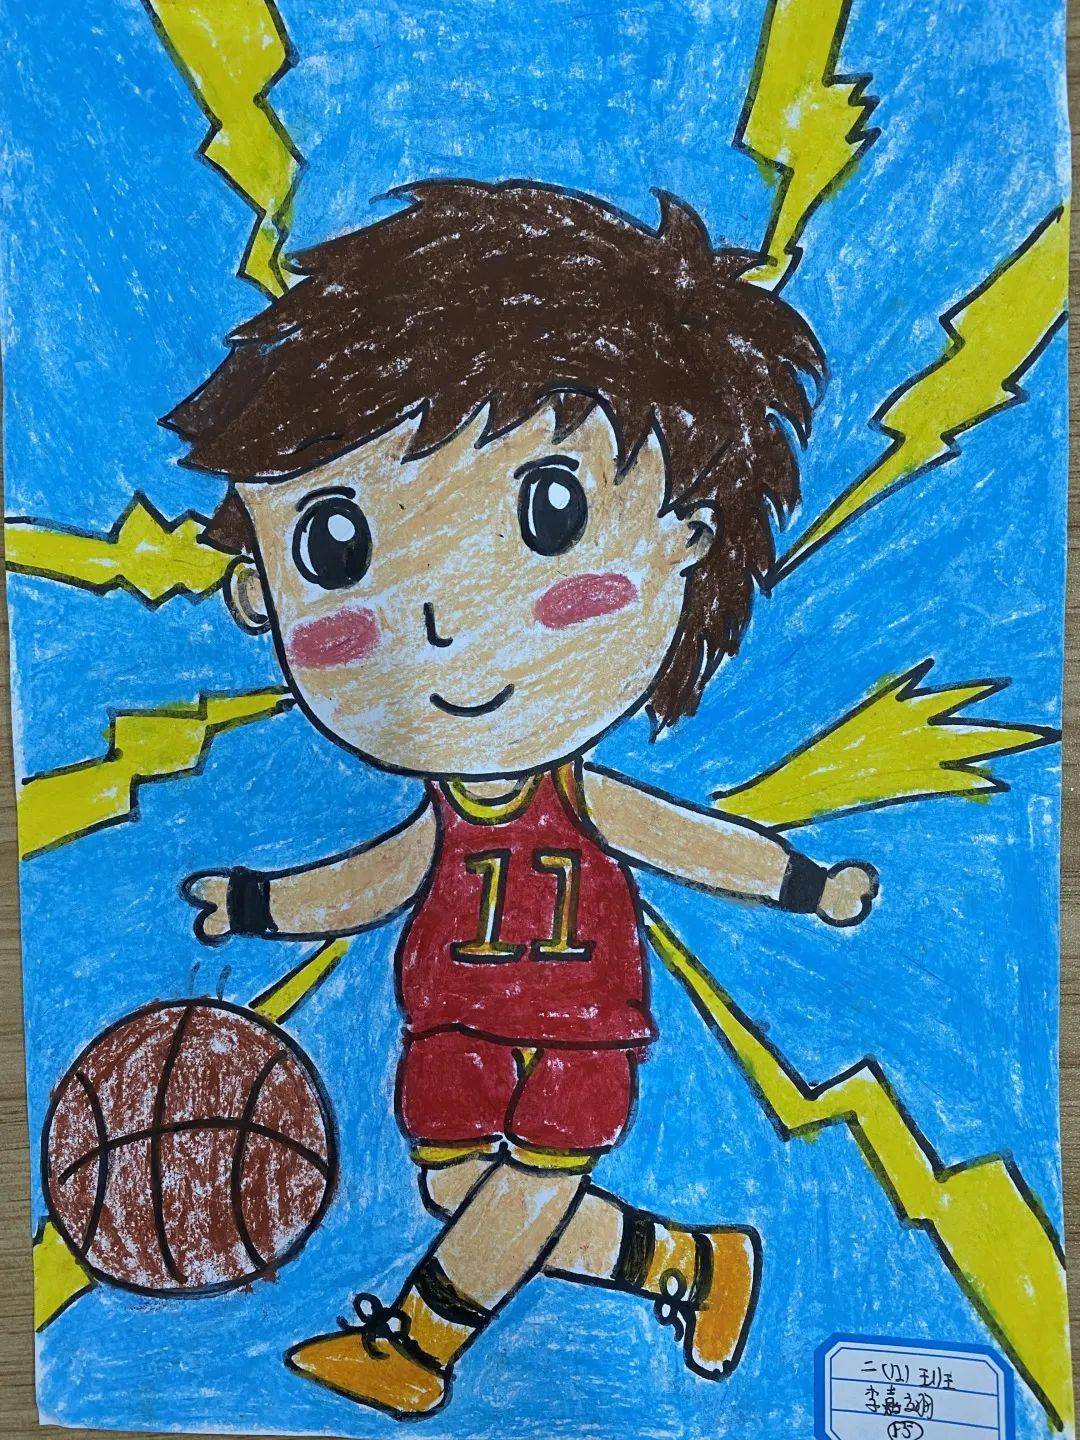 我的篮球梦绘画作品图片